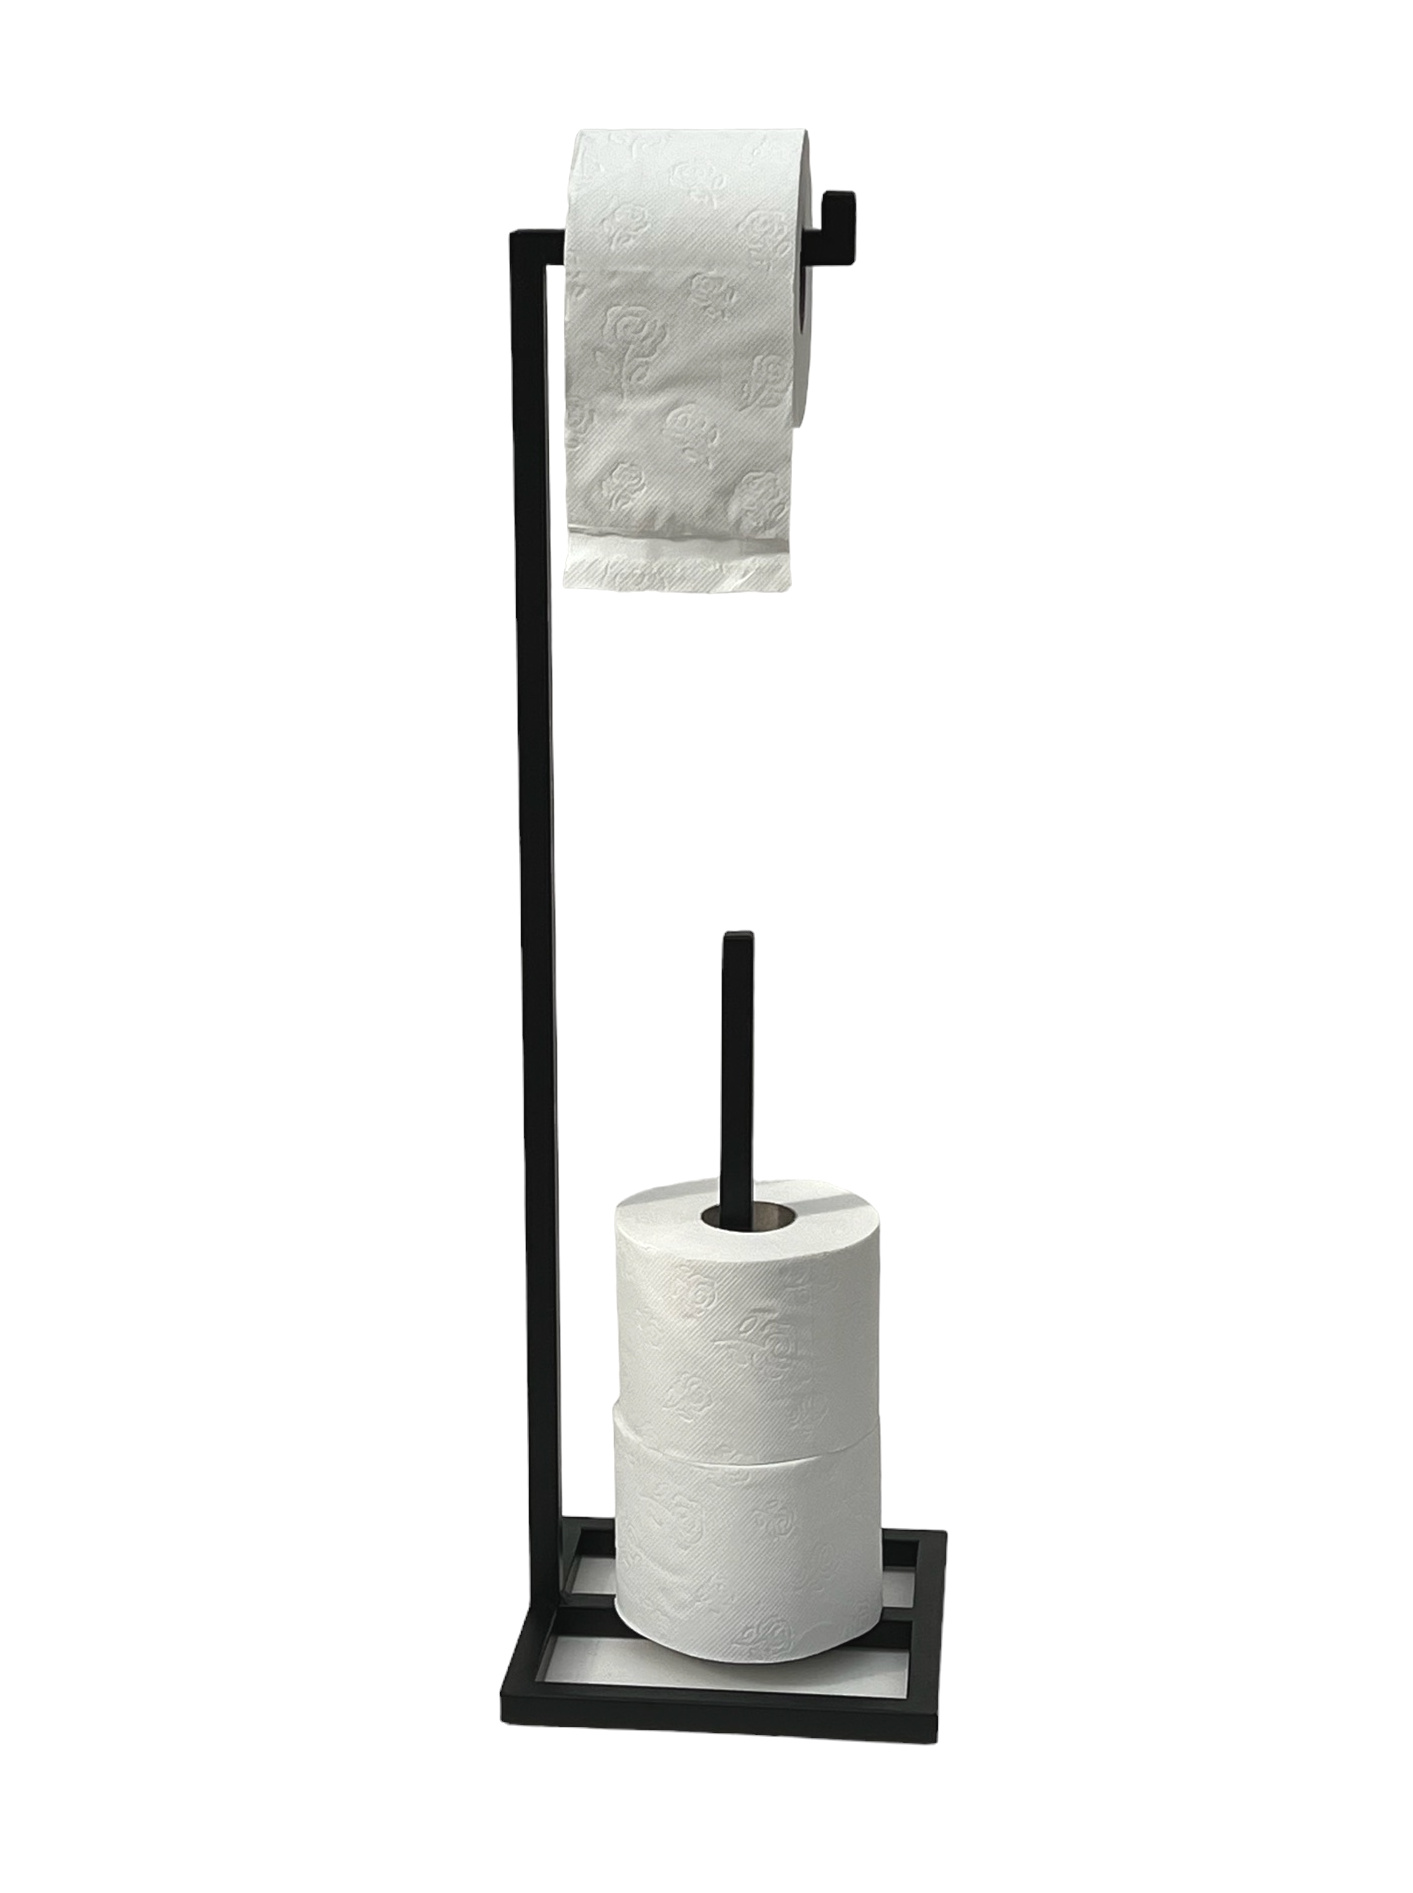 DanDiBo Toilettenpapierhalter Stehend Schwarz Metall 96459 Gäste WC Ständer  Klopapierhalter Ersatzrollenhalter Papierhalter Rollenhalter-DanDiBo